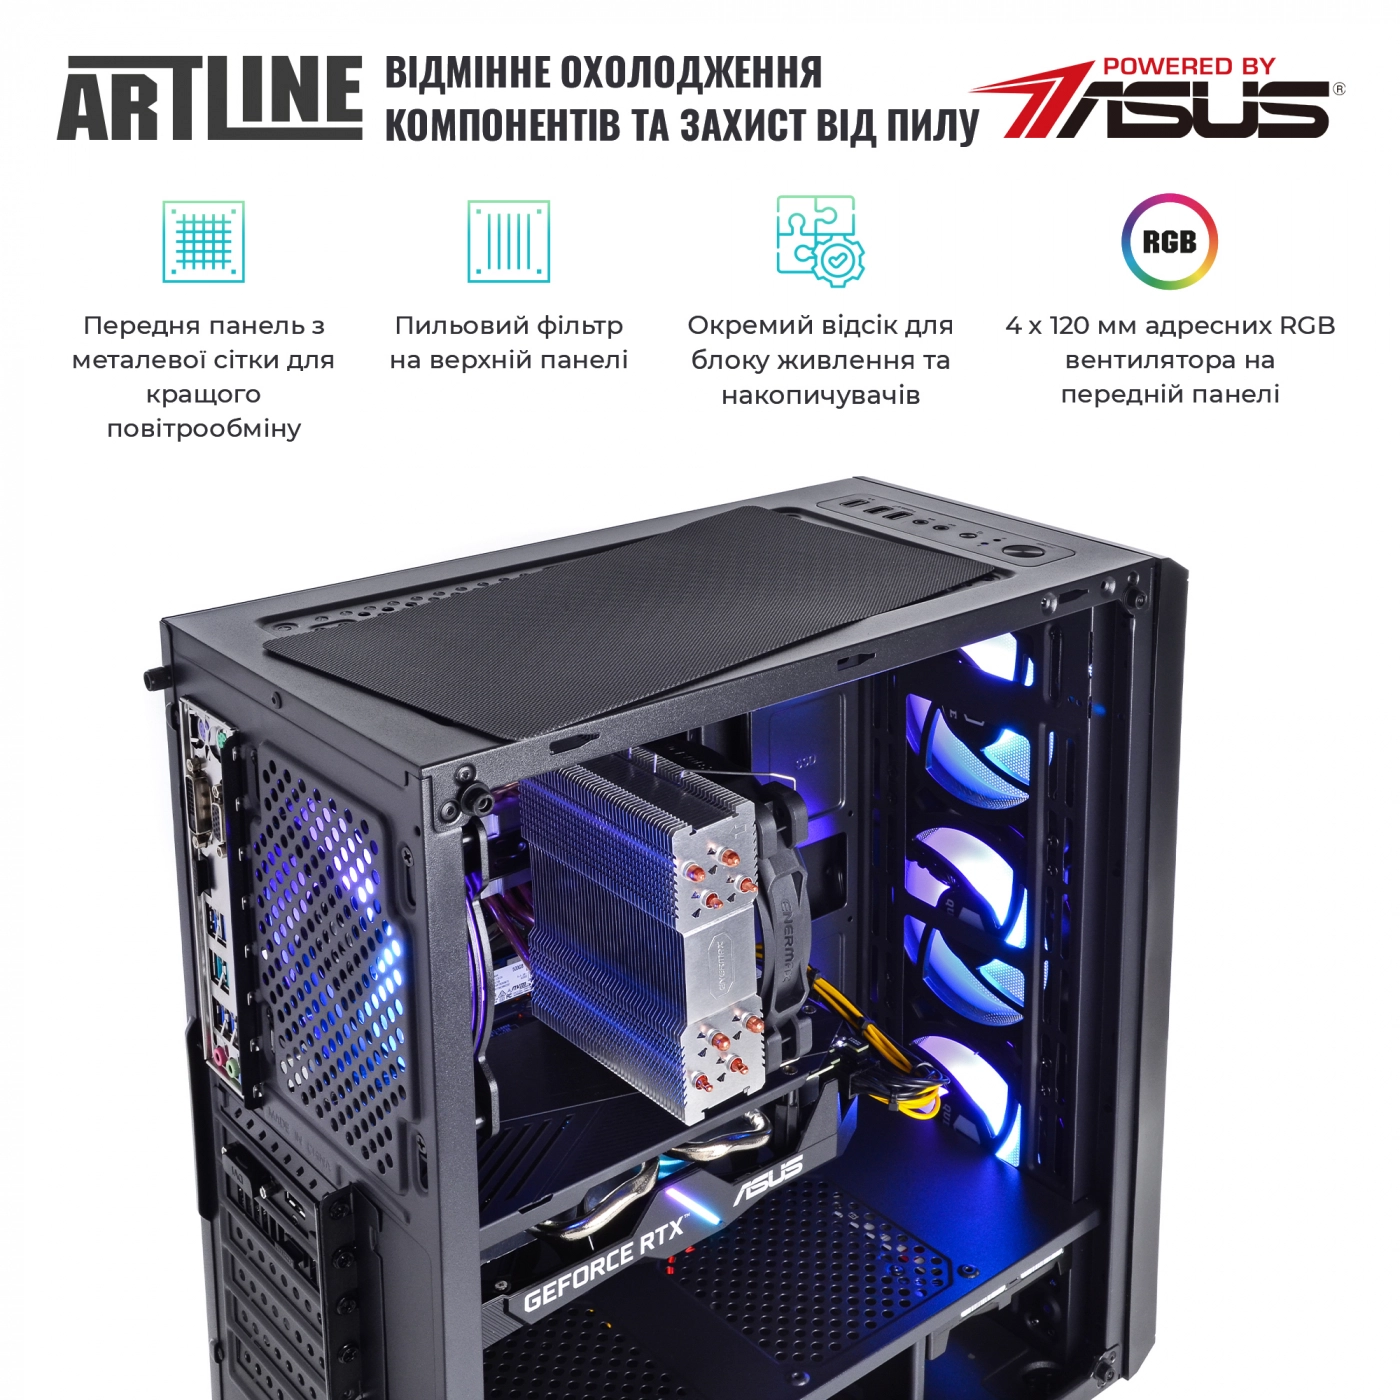 Купить Компьютер ARTLINE Gaming X56v20 - фото 3